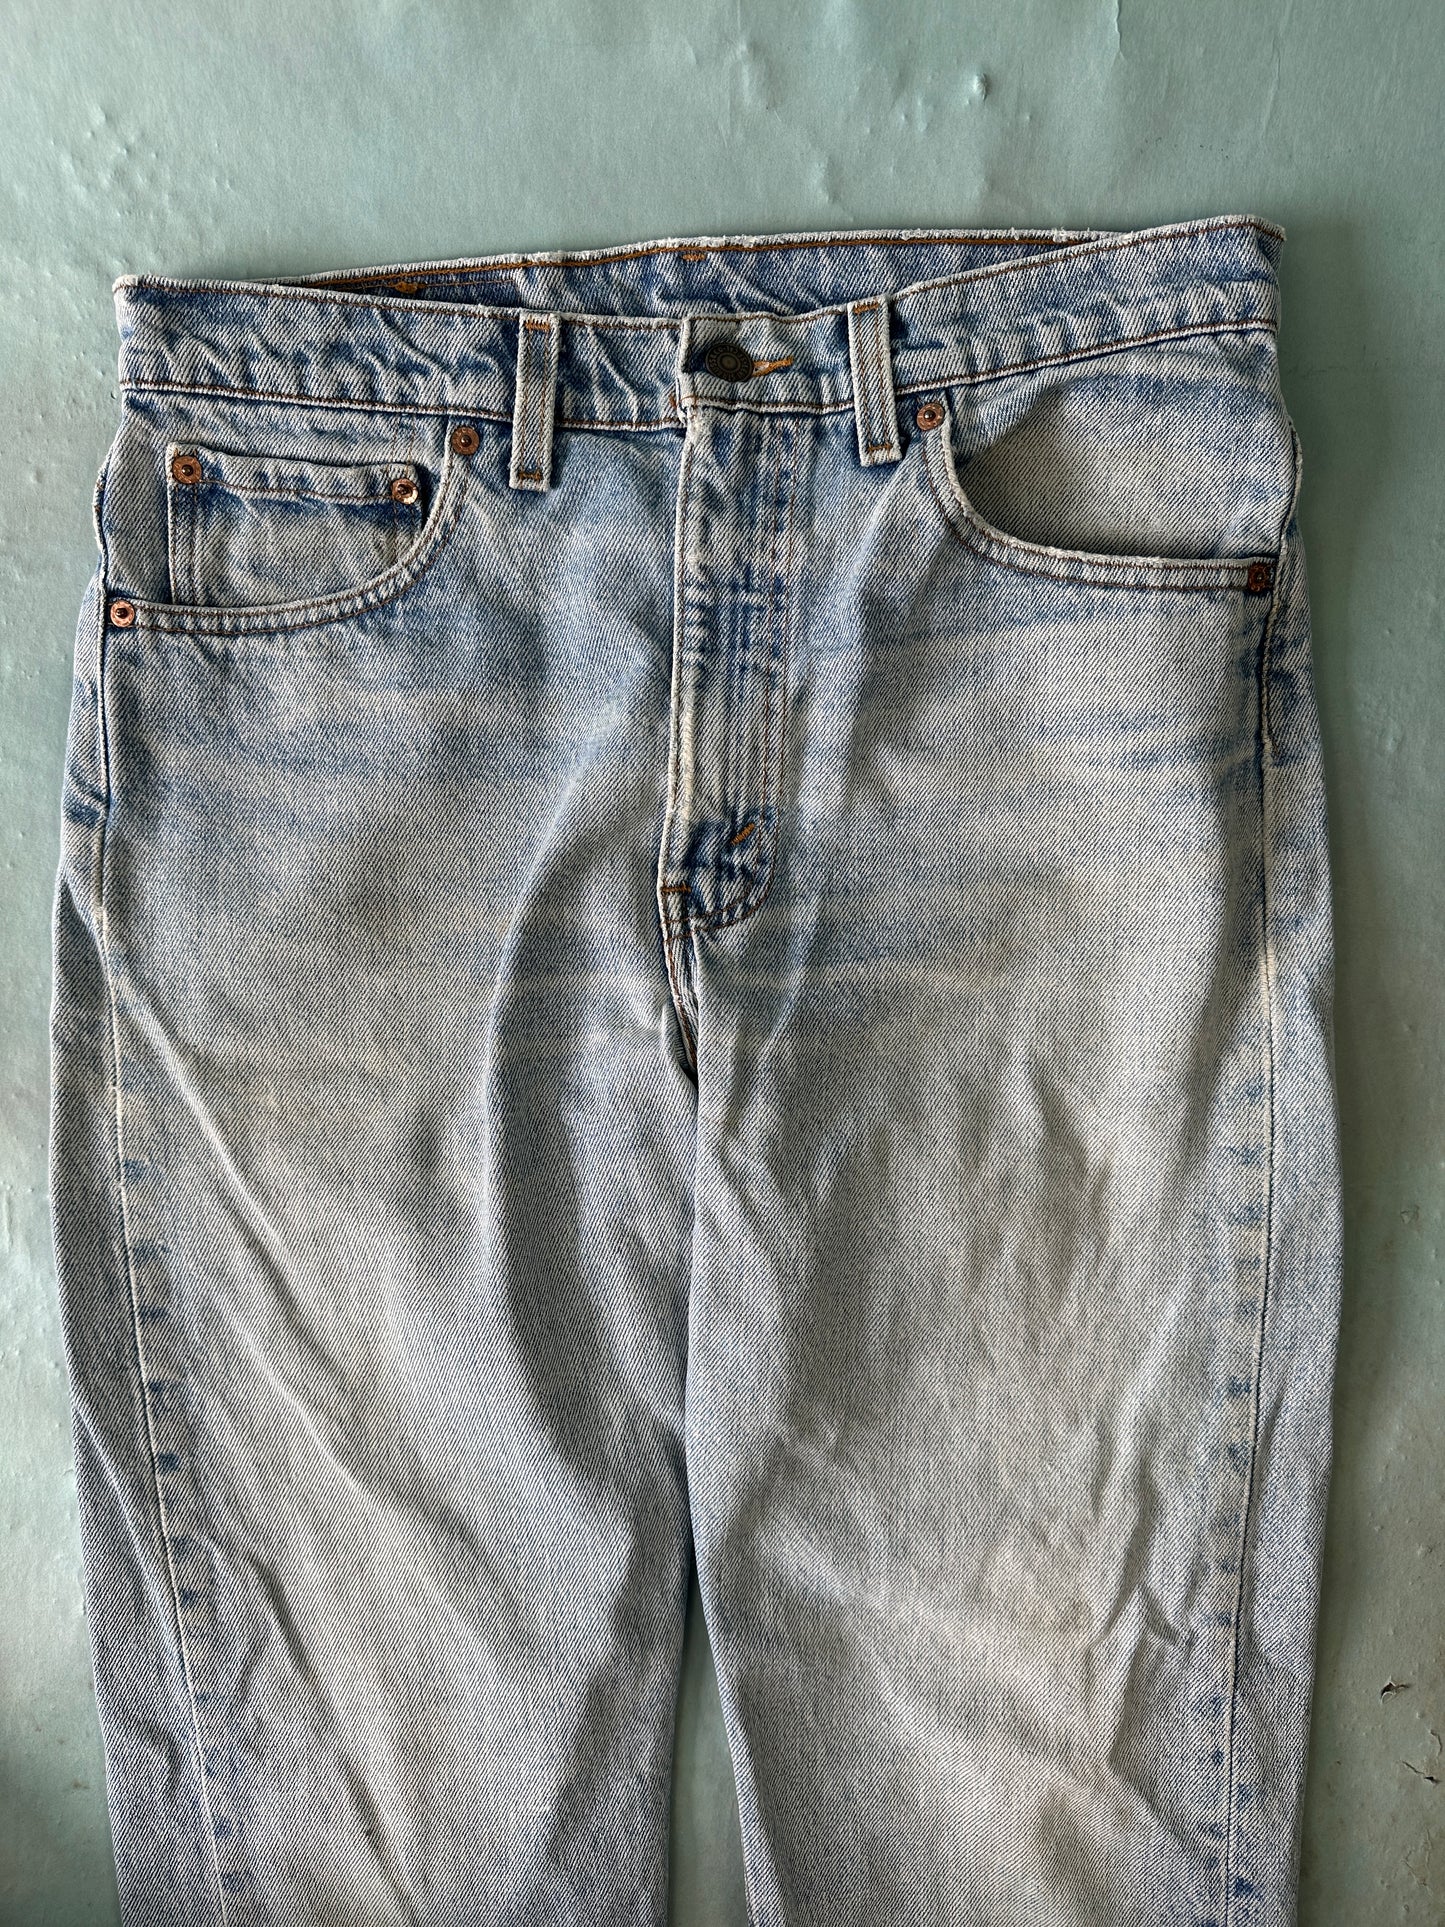 Levis 505 Vintage Jeans - 33 x 32